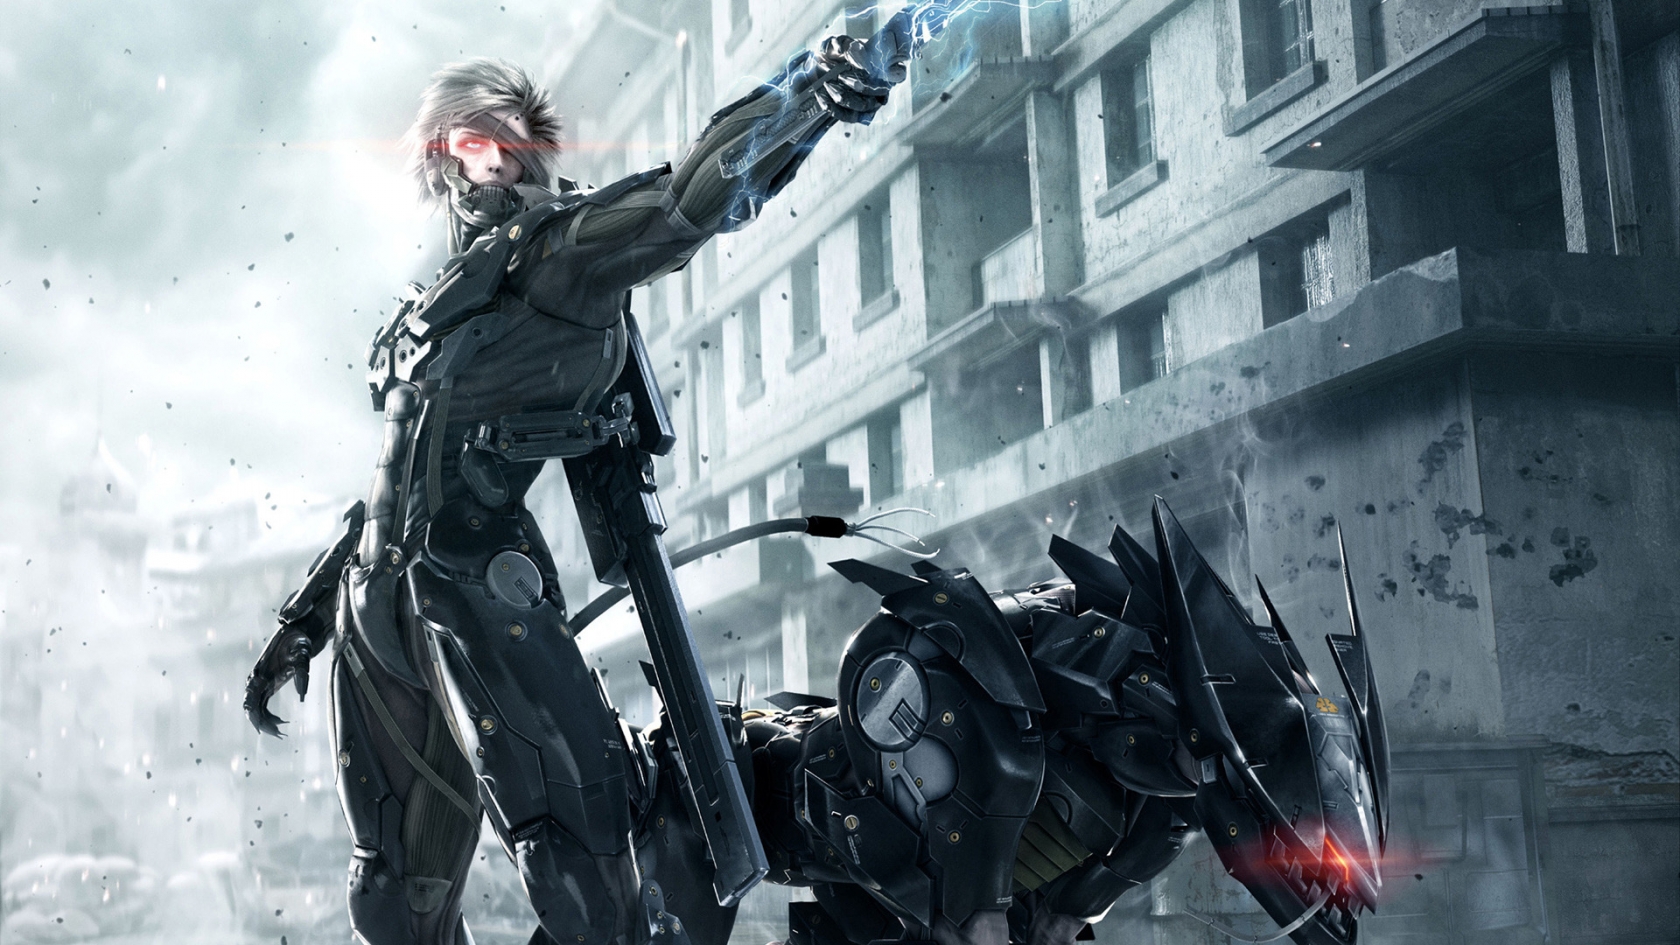 Metal Gear Rising Revengeance for 1680 x 945 HDTV resolution